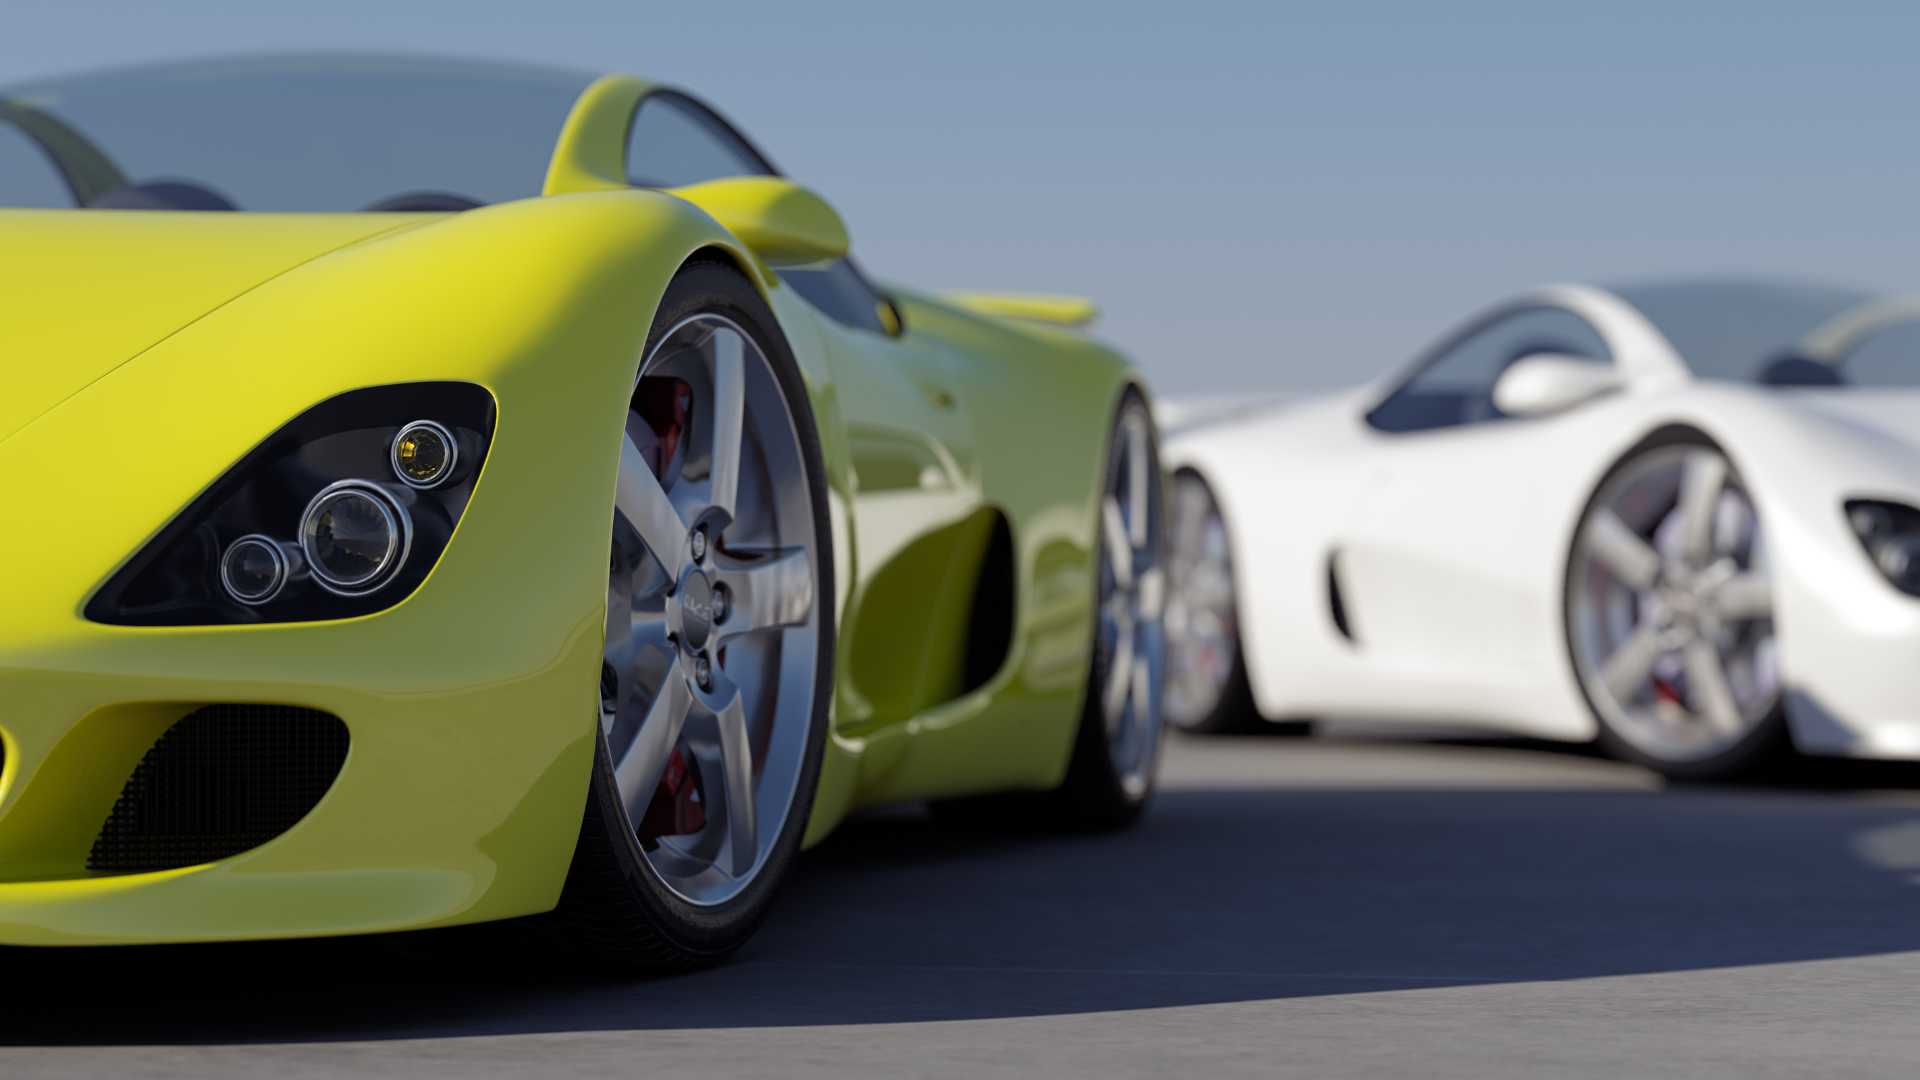 deux voitures de sport jaune et blanche